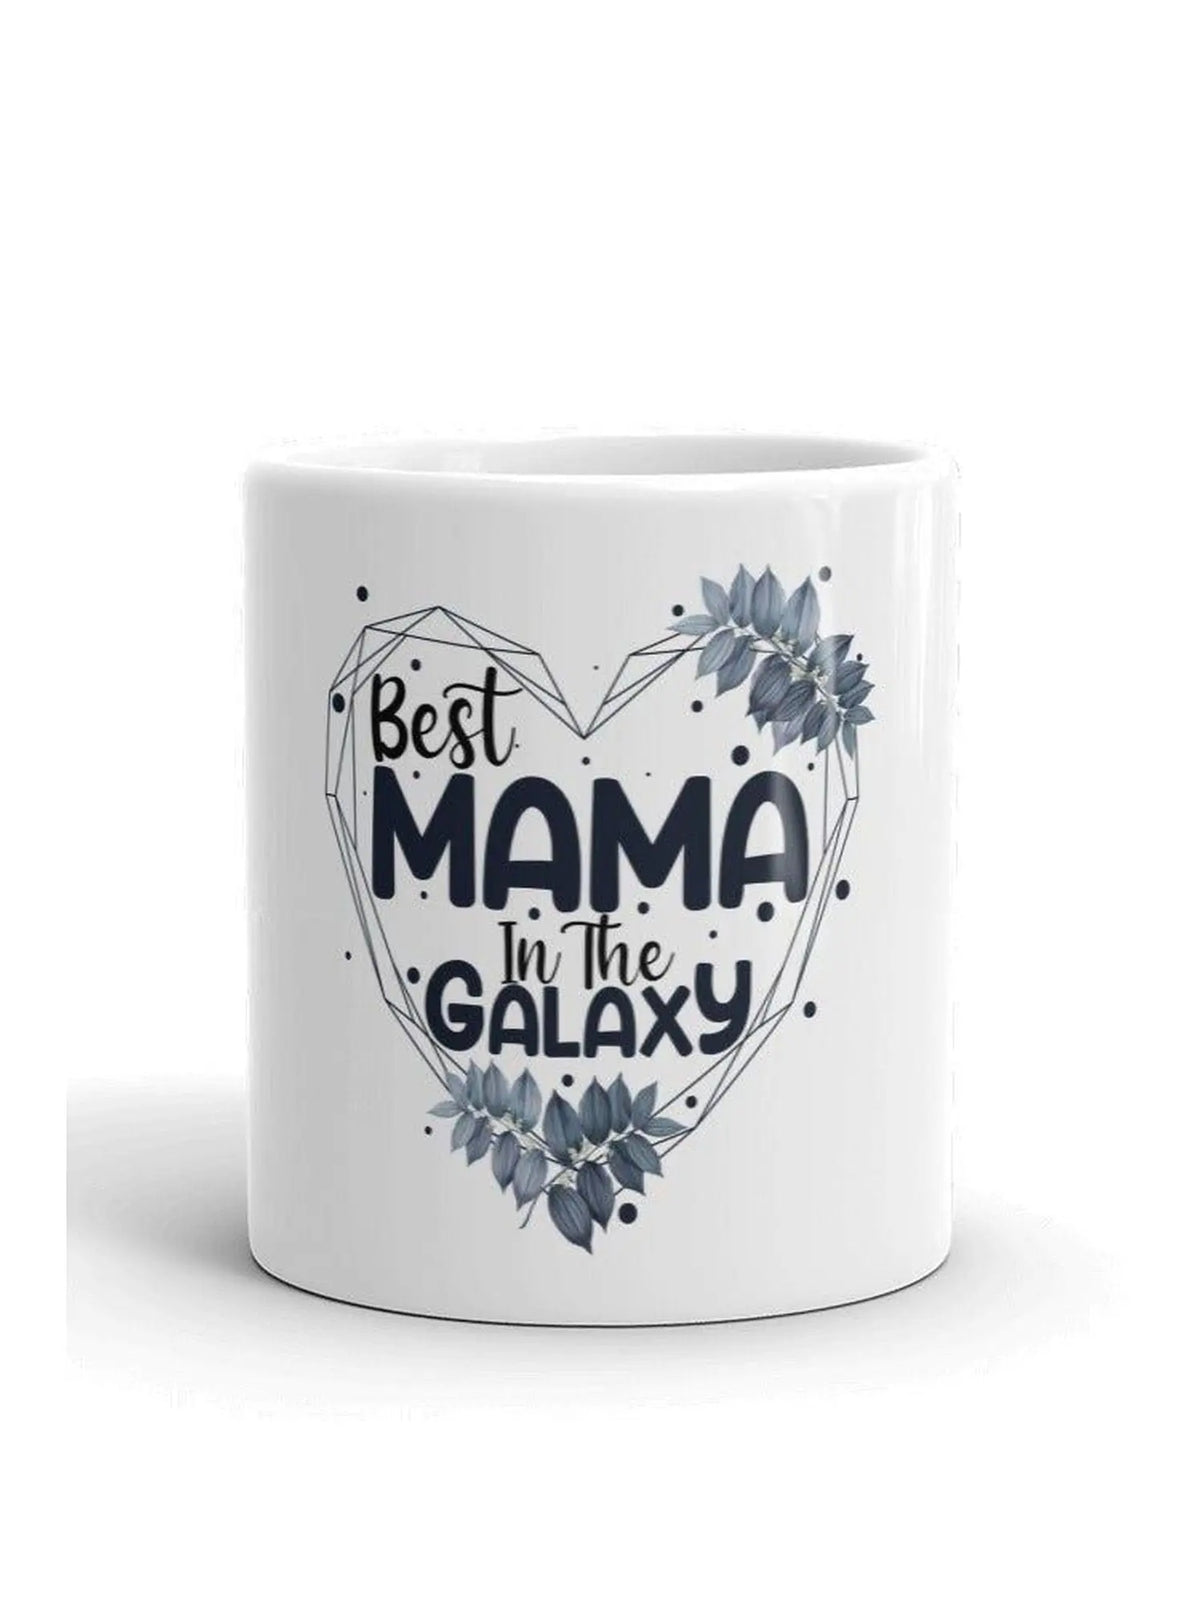 https://mysticoasisgifts.com/cdn/shop/products/Best_Mom_In_The_Galaxy_Mug_6.jpg?v=1703906158&width=1200